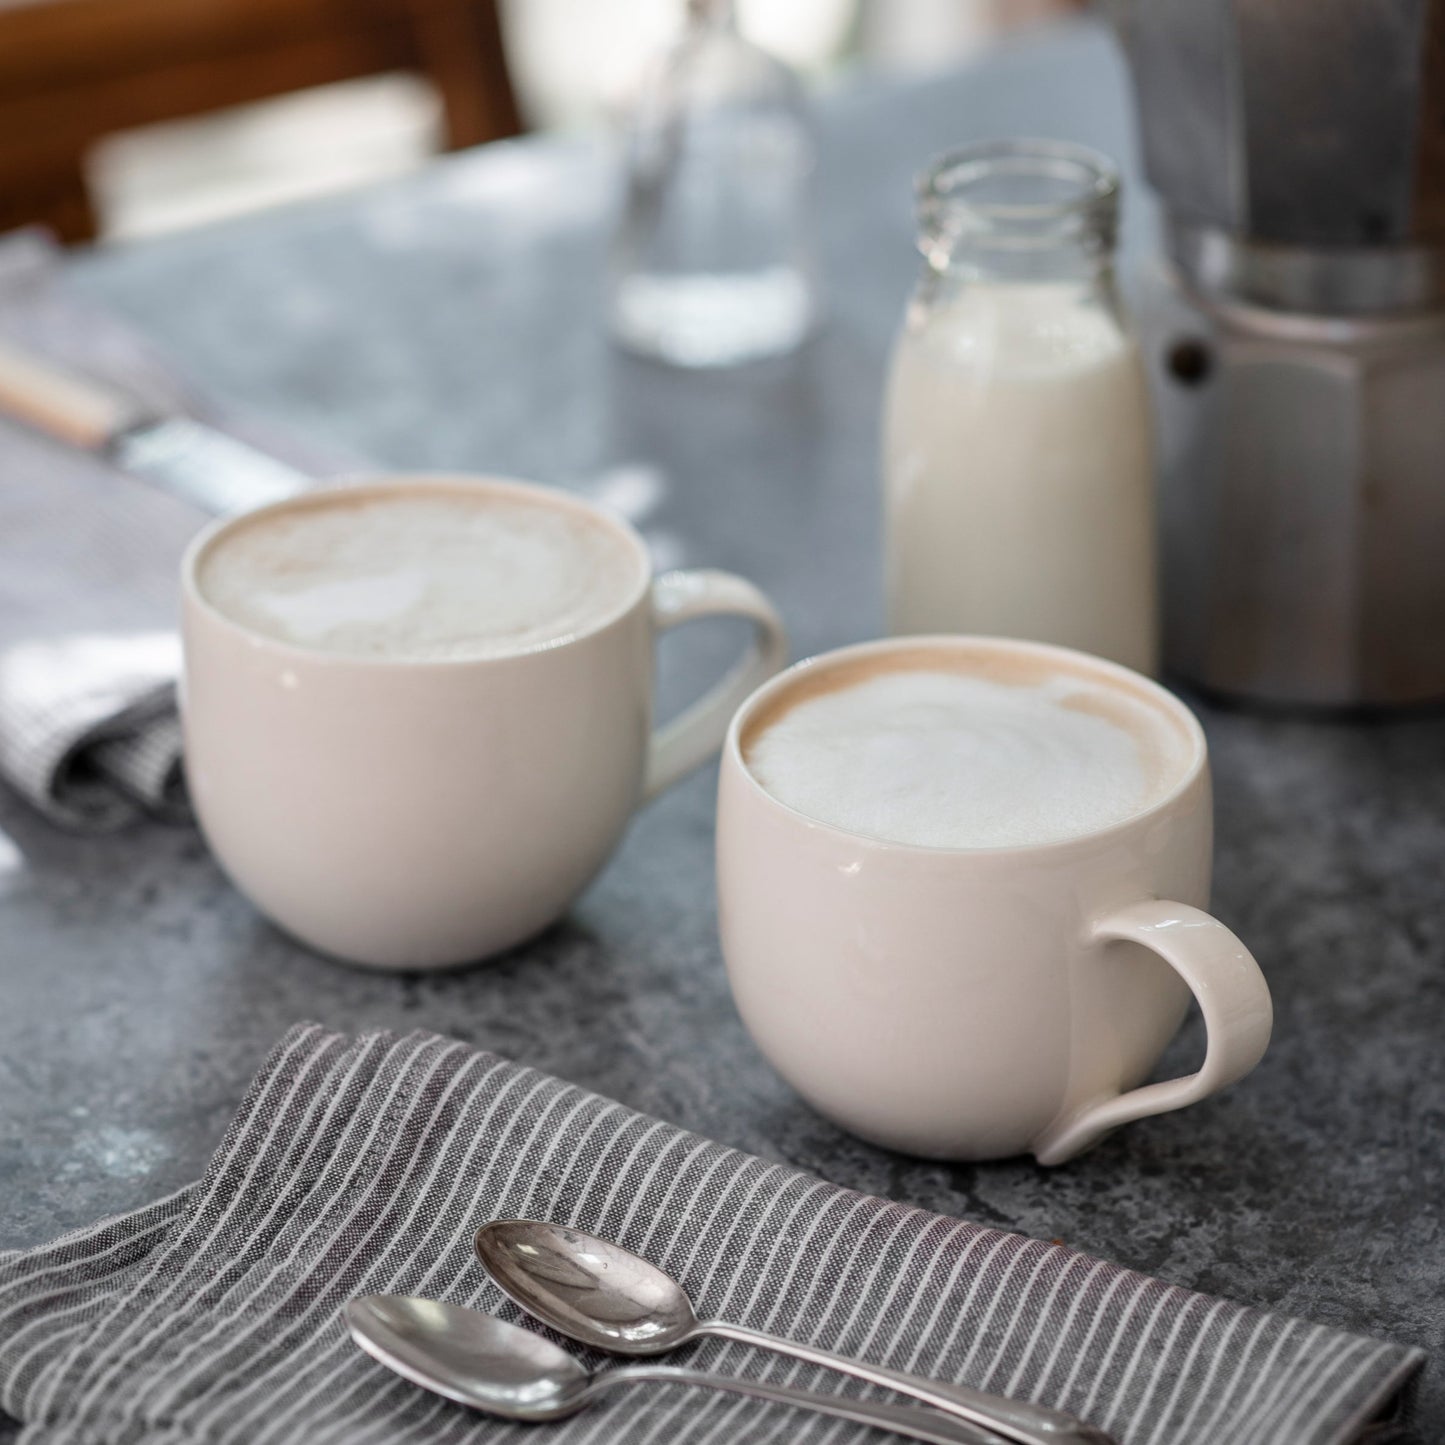 Plain Porcelain Simple Mug with Latte